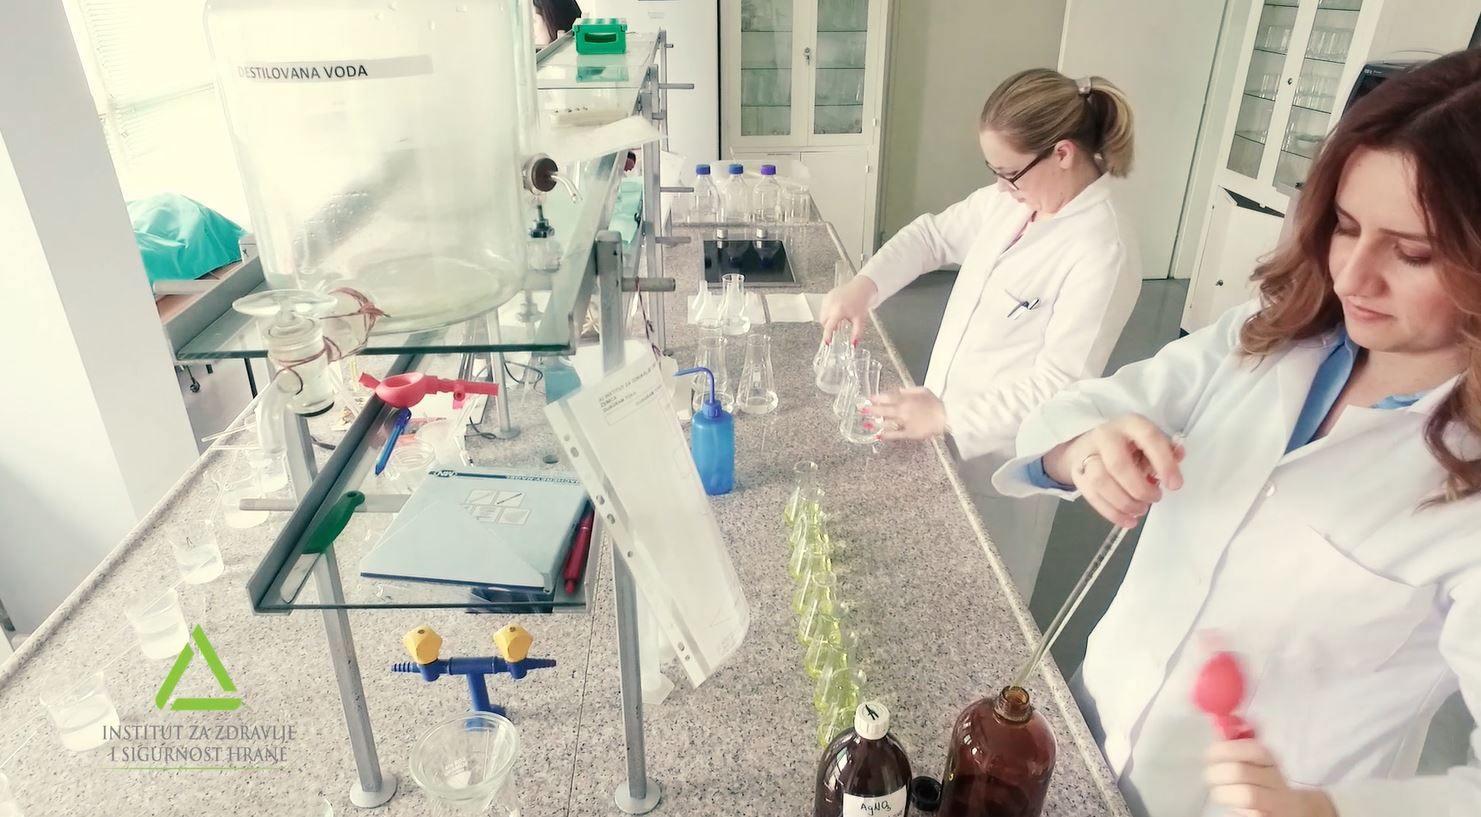 Laboratorij Instituta: Urađene mikrobiološke i hemijska analize vode - Avaz